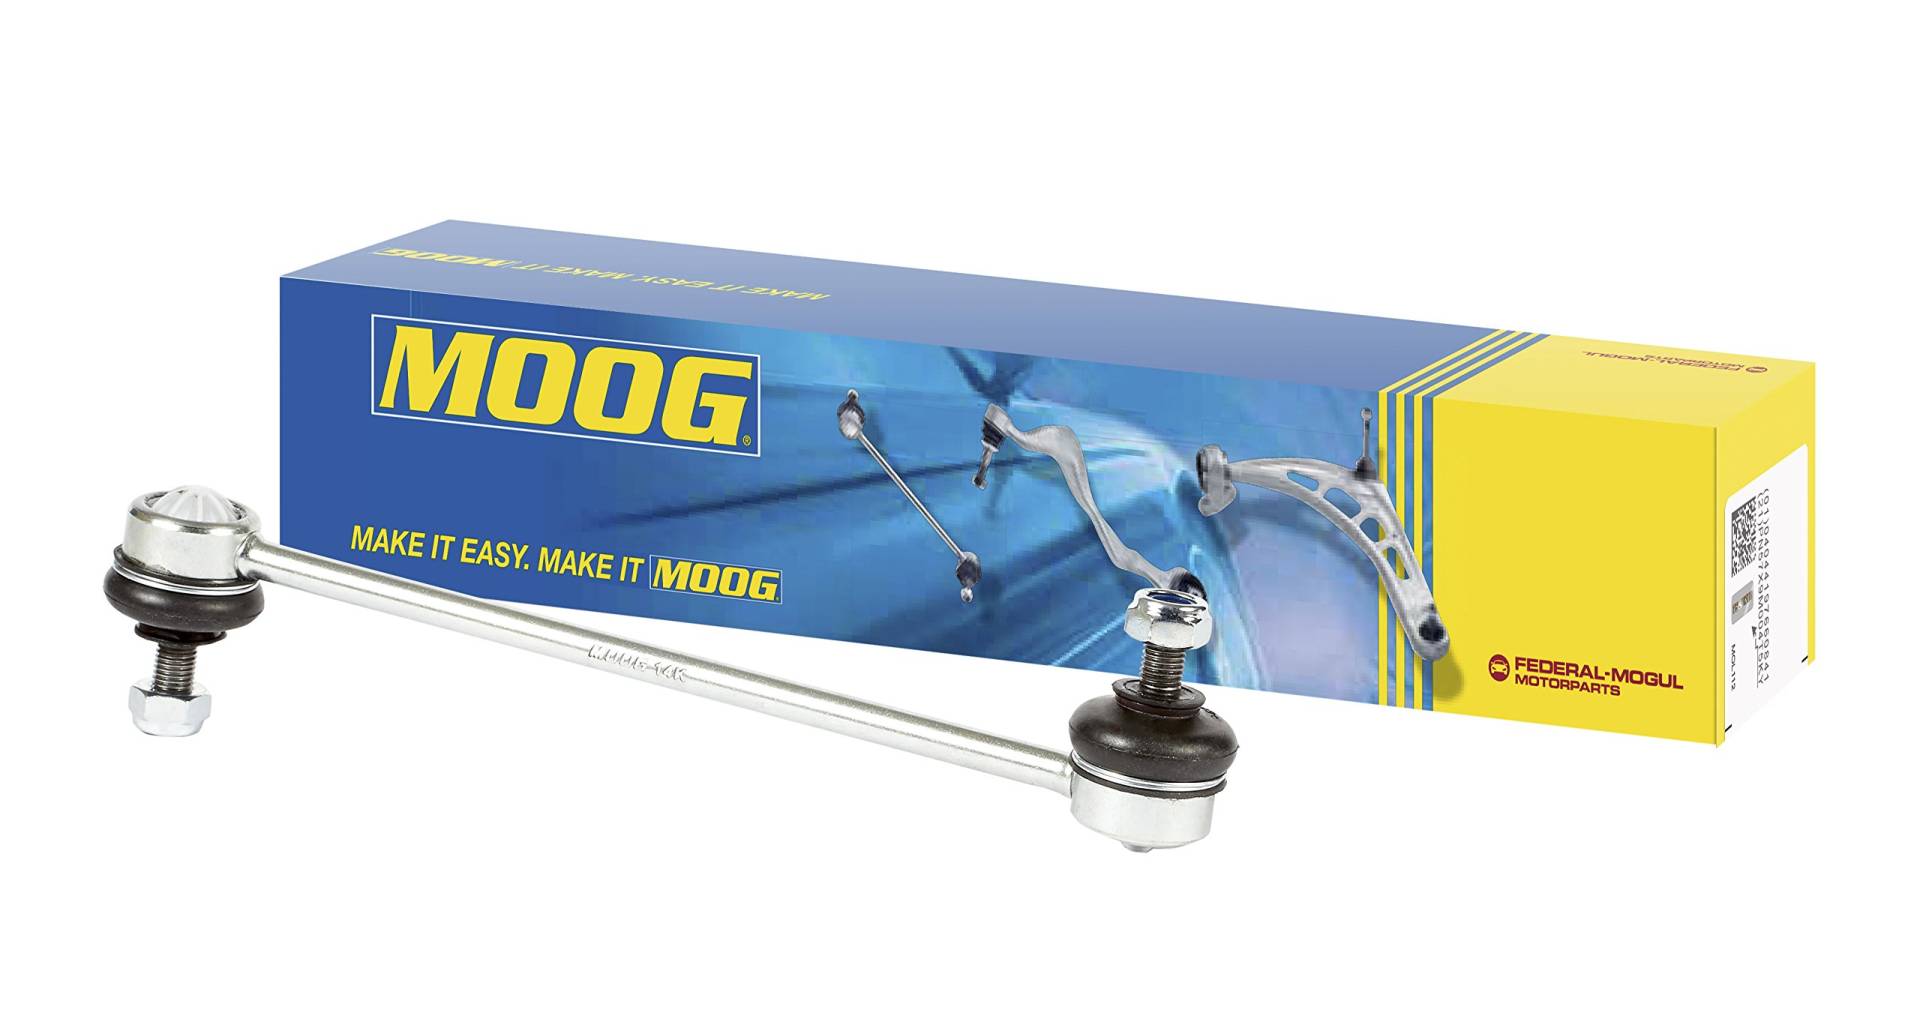 MOOG NI-LS-8422 Stabilsatoren von MOOG